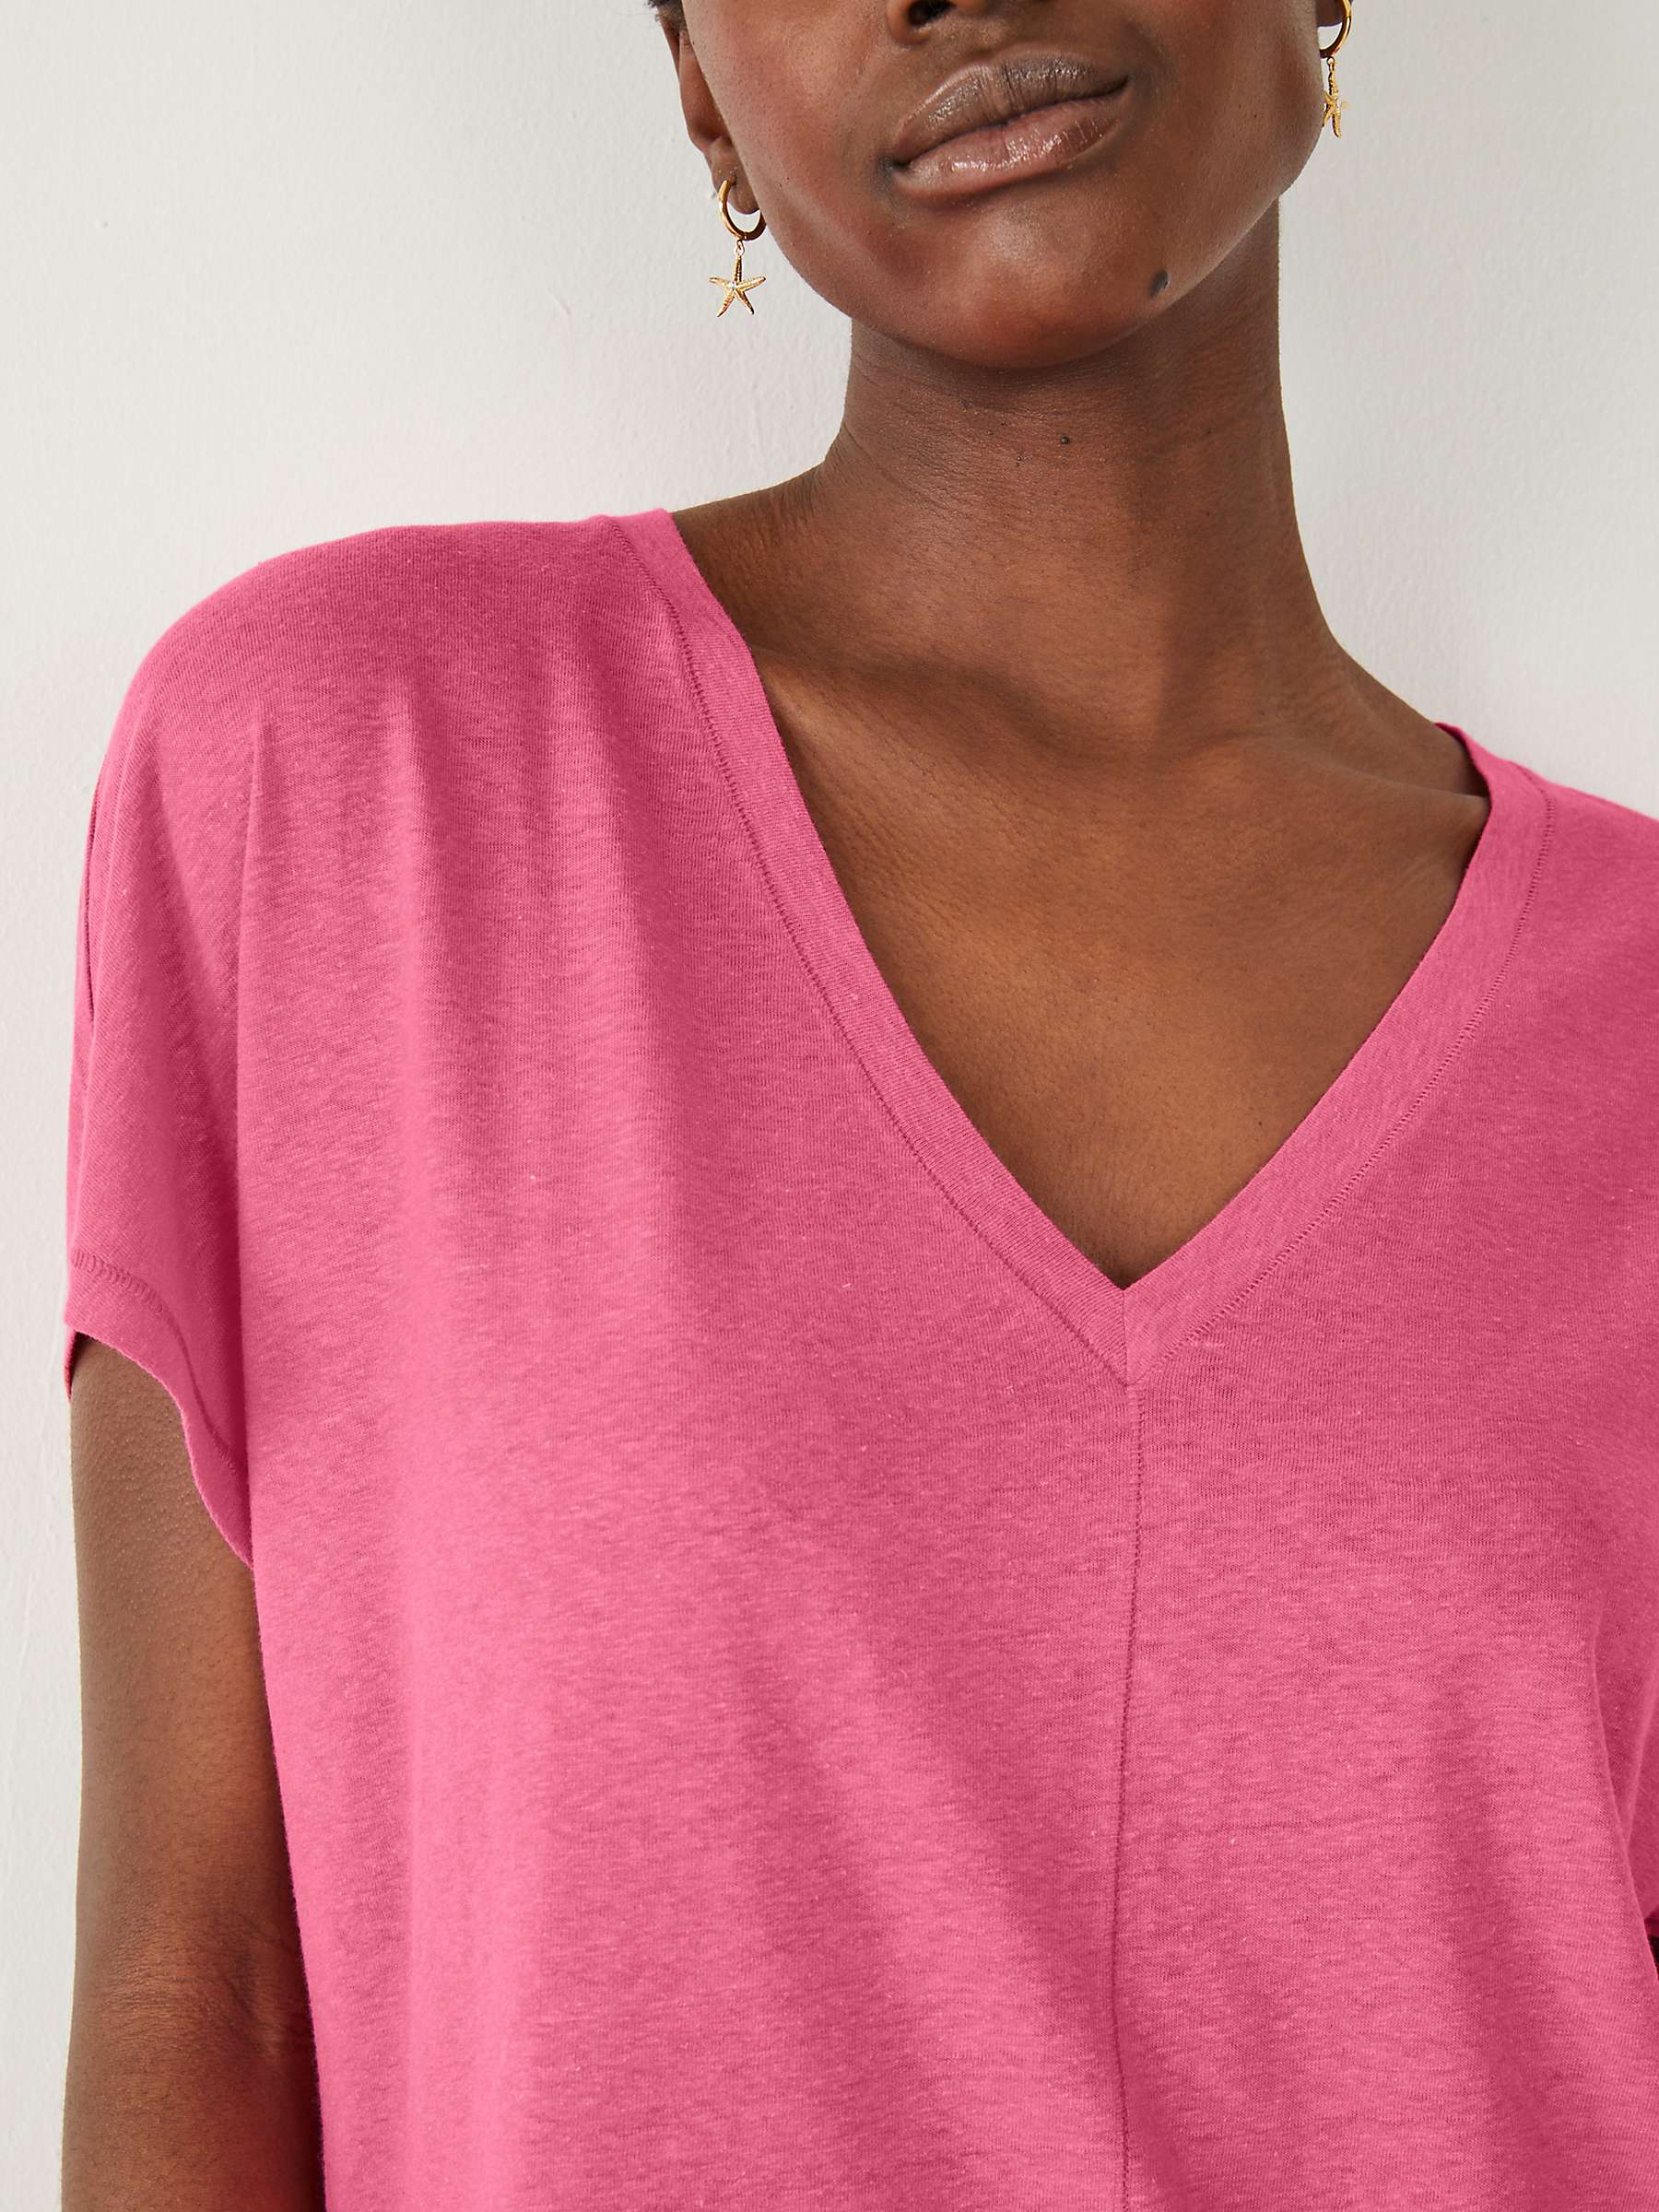 Buy HUSH Danny Deep V-Neck Linen Blend T-Shirt Online at johnlewis.com